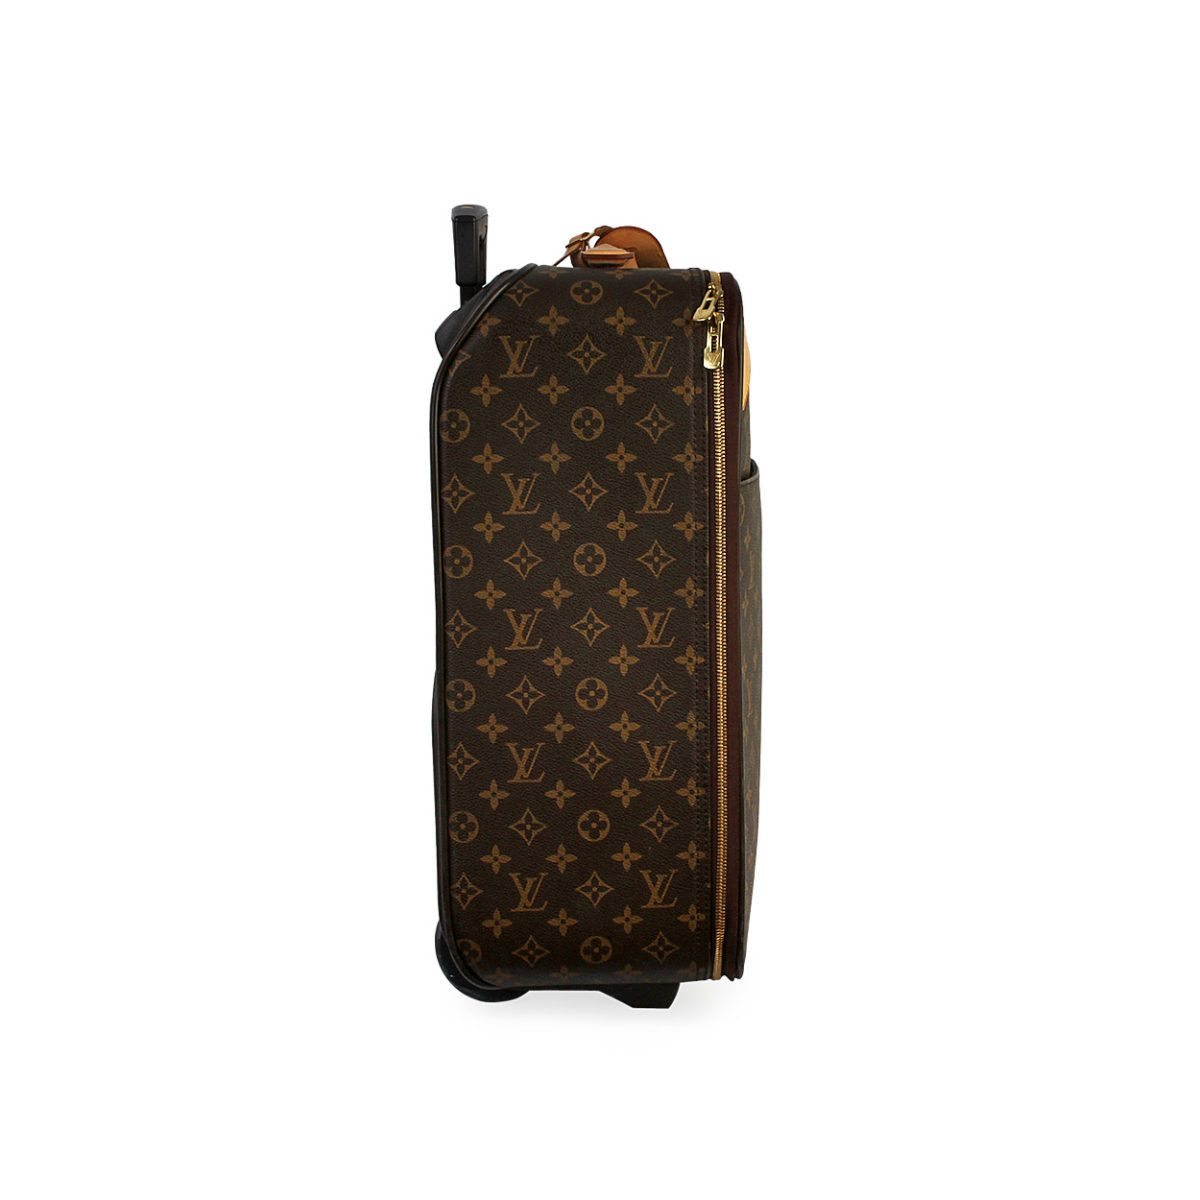 Louis Vuitton Pegase 50 Monogram Canvas Rolling Suitcase Travel